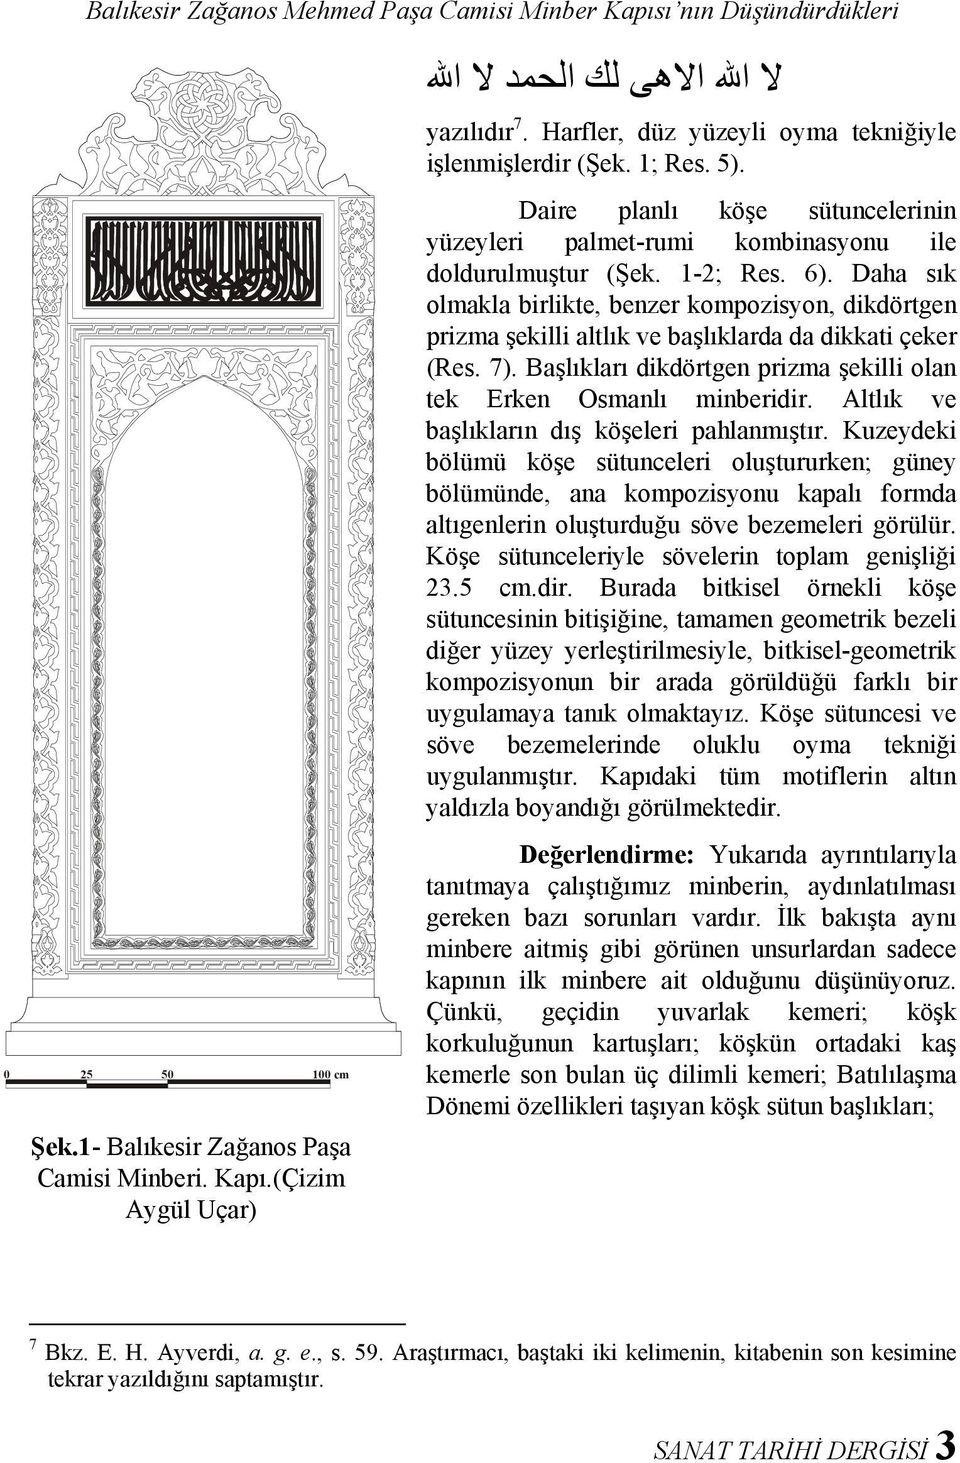 Daha sık olmakla birlikte, benzer kompozisyon, dikdörtgen prizma şekilli altlık ve başlıklarda da dikkati çeker (Res. 7). Başlıkları dikdörtgen prizma şekilli olan tek Erken Osmanlı minberidir.